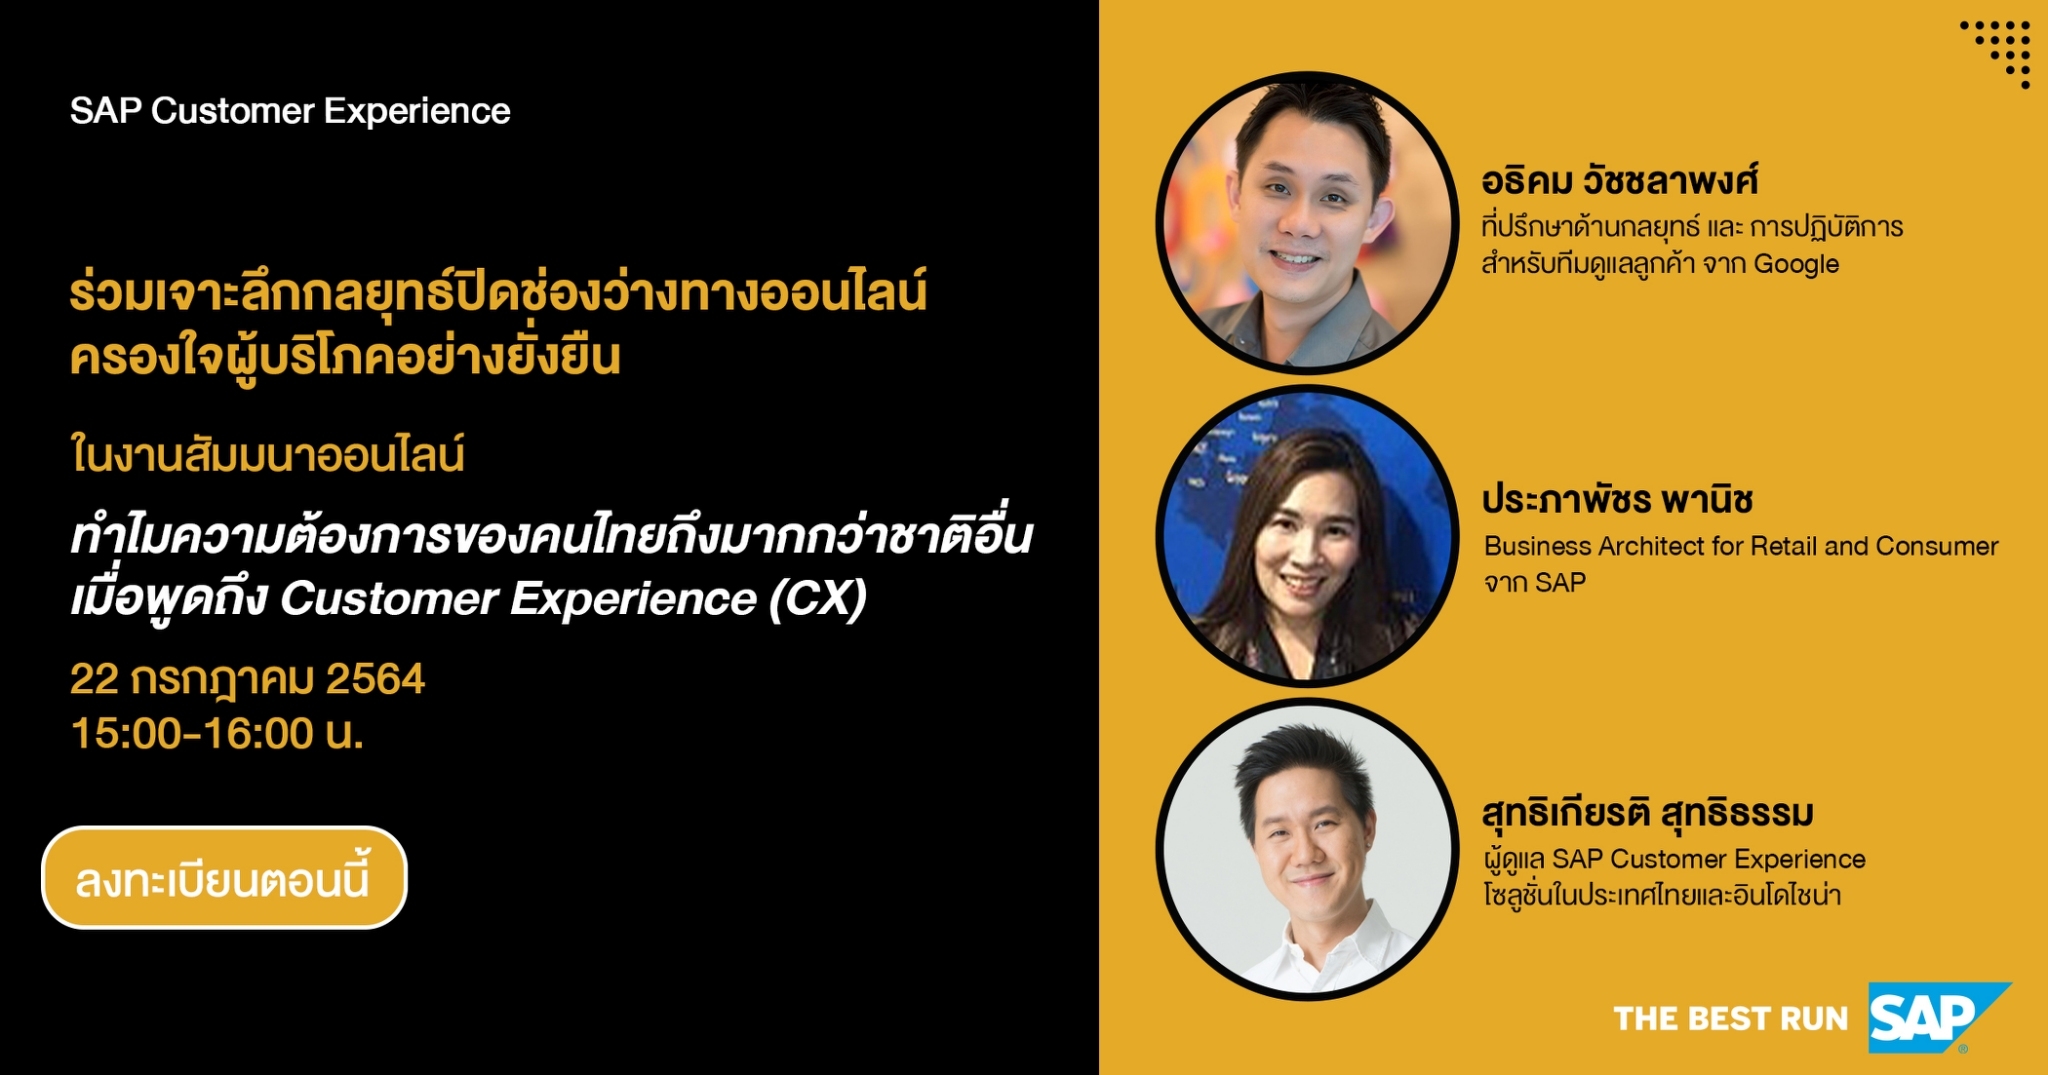 เอสเอพี จัดสัมมนาออนไลน์ ช่วยธุรกิจไทยเอาชนะใจลูกค้าในยุคโควิด 2.0สมัครฟรีได้แล้ววันนี้ พร้อมเจาะอินไซต์ Customer Experience ร่วมกันวันที่ 22 ก.ค.